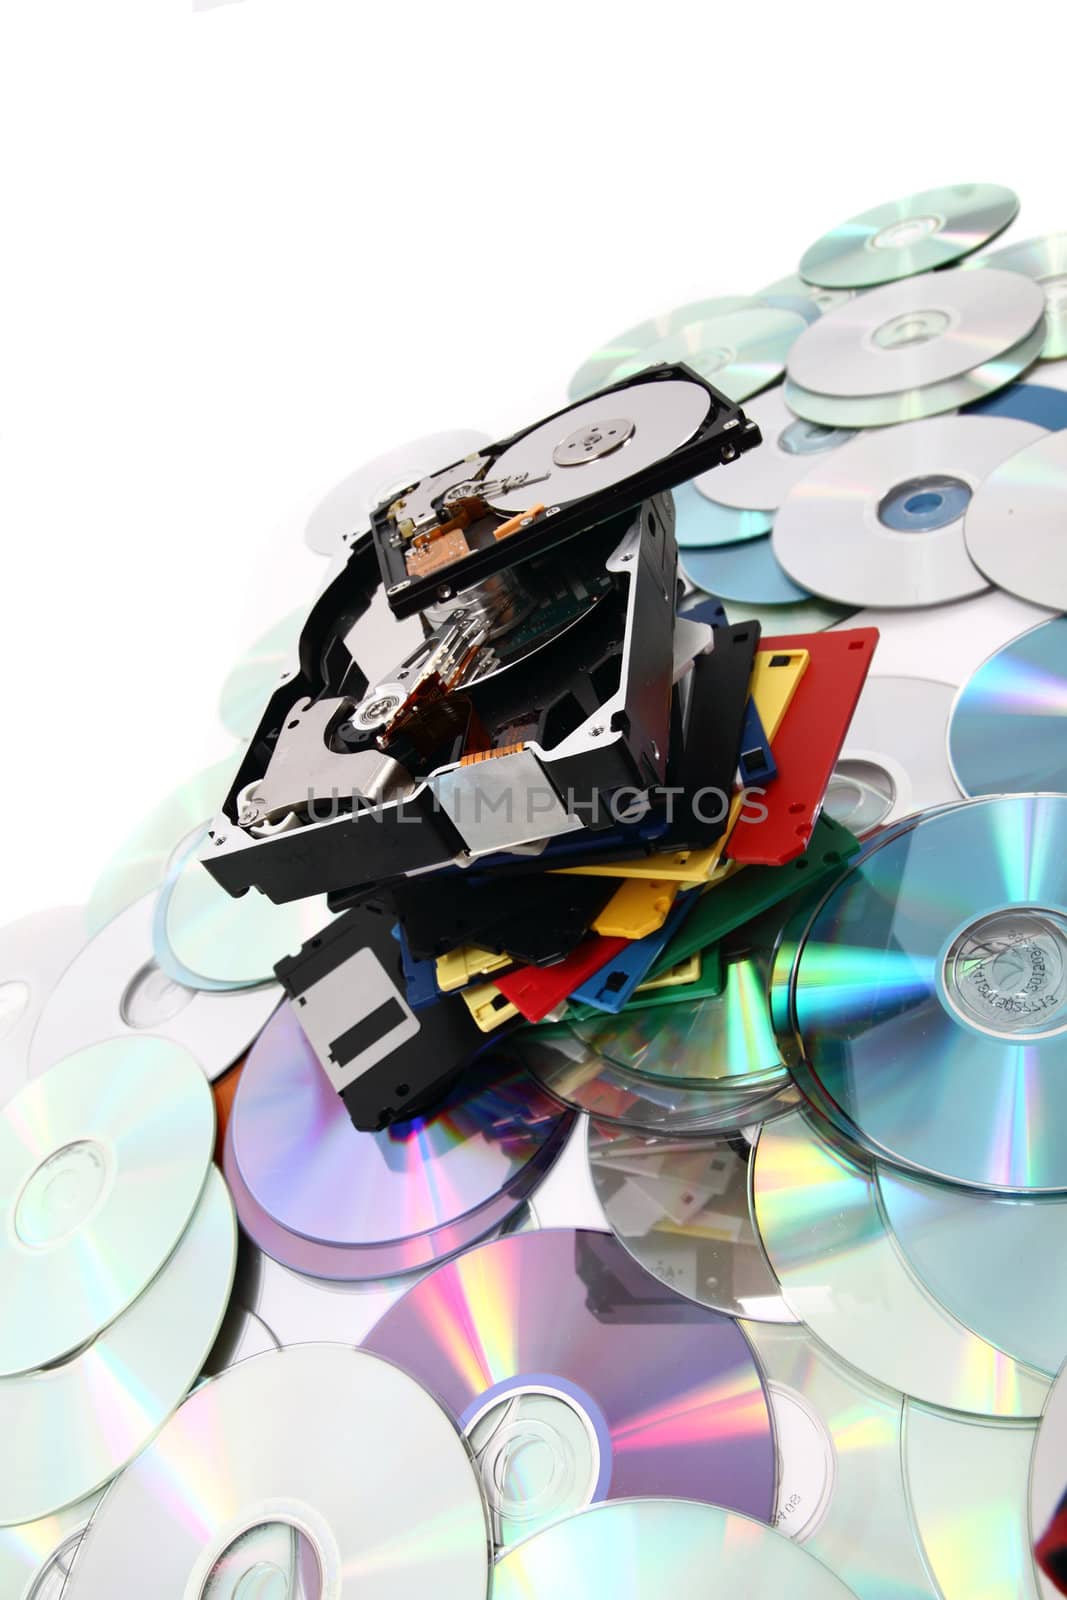  hdd, floppy, dvd and cd-rom  data background by jonnysek